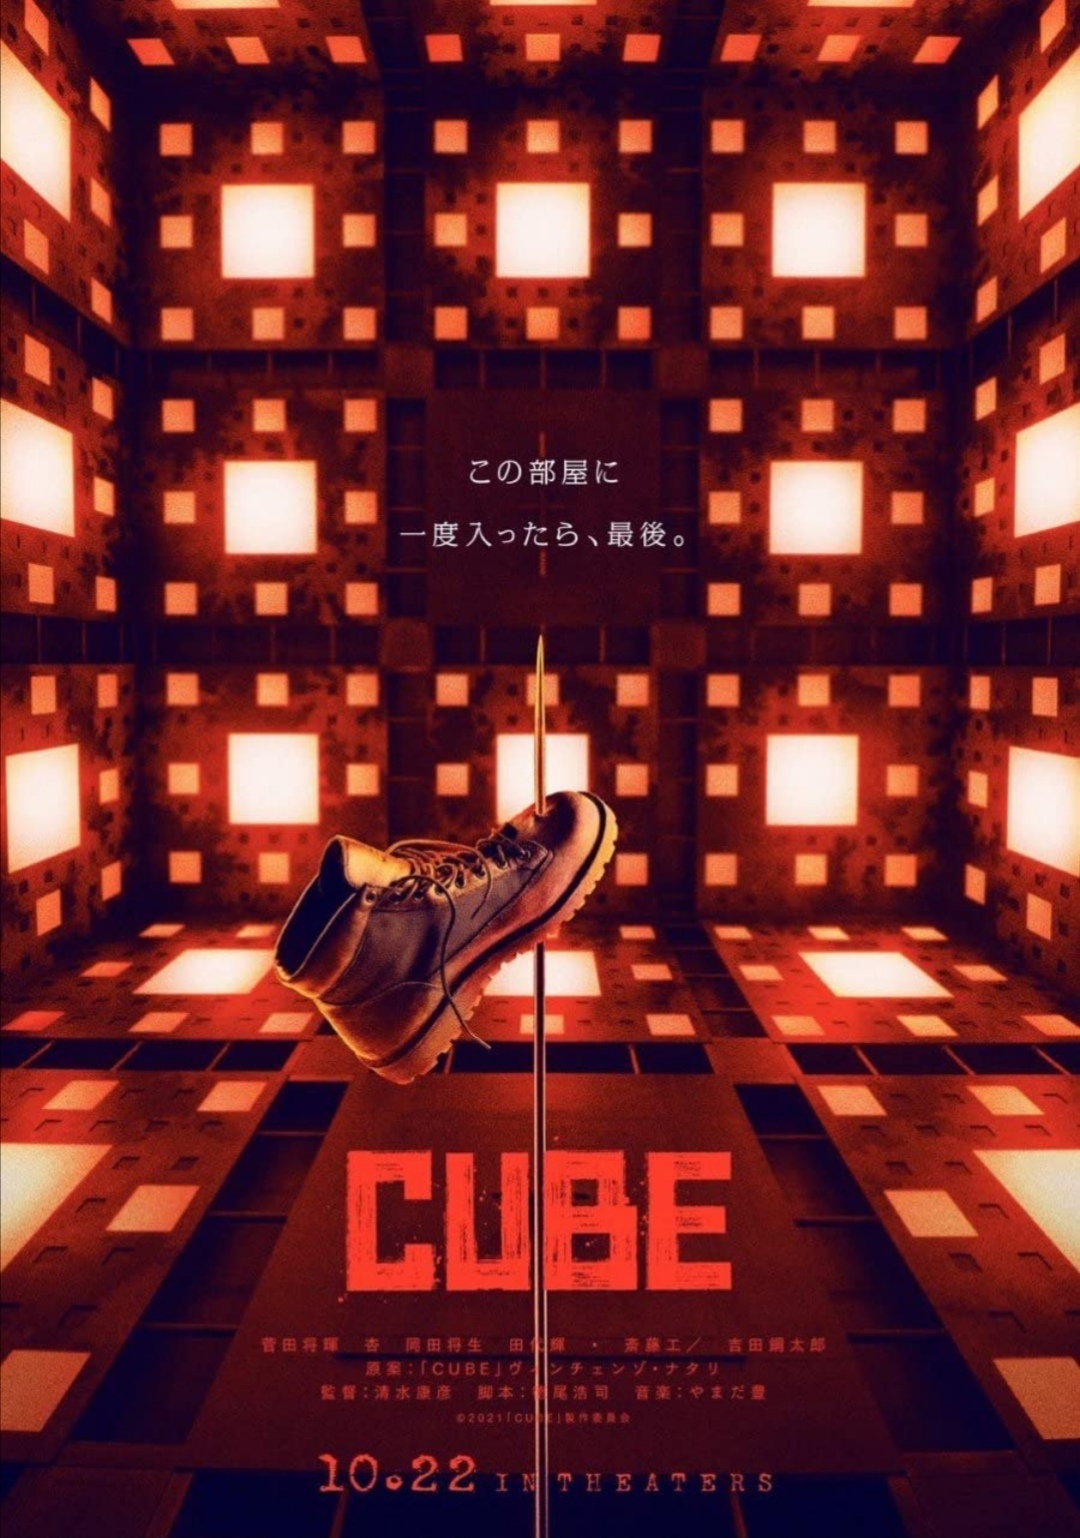 Il teaser trailer del remake giapponese di Cube – Il Cubo